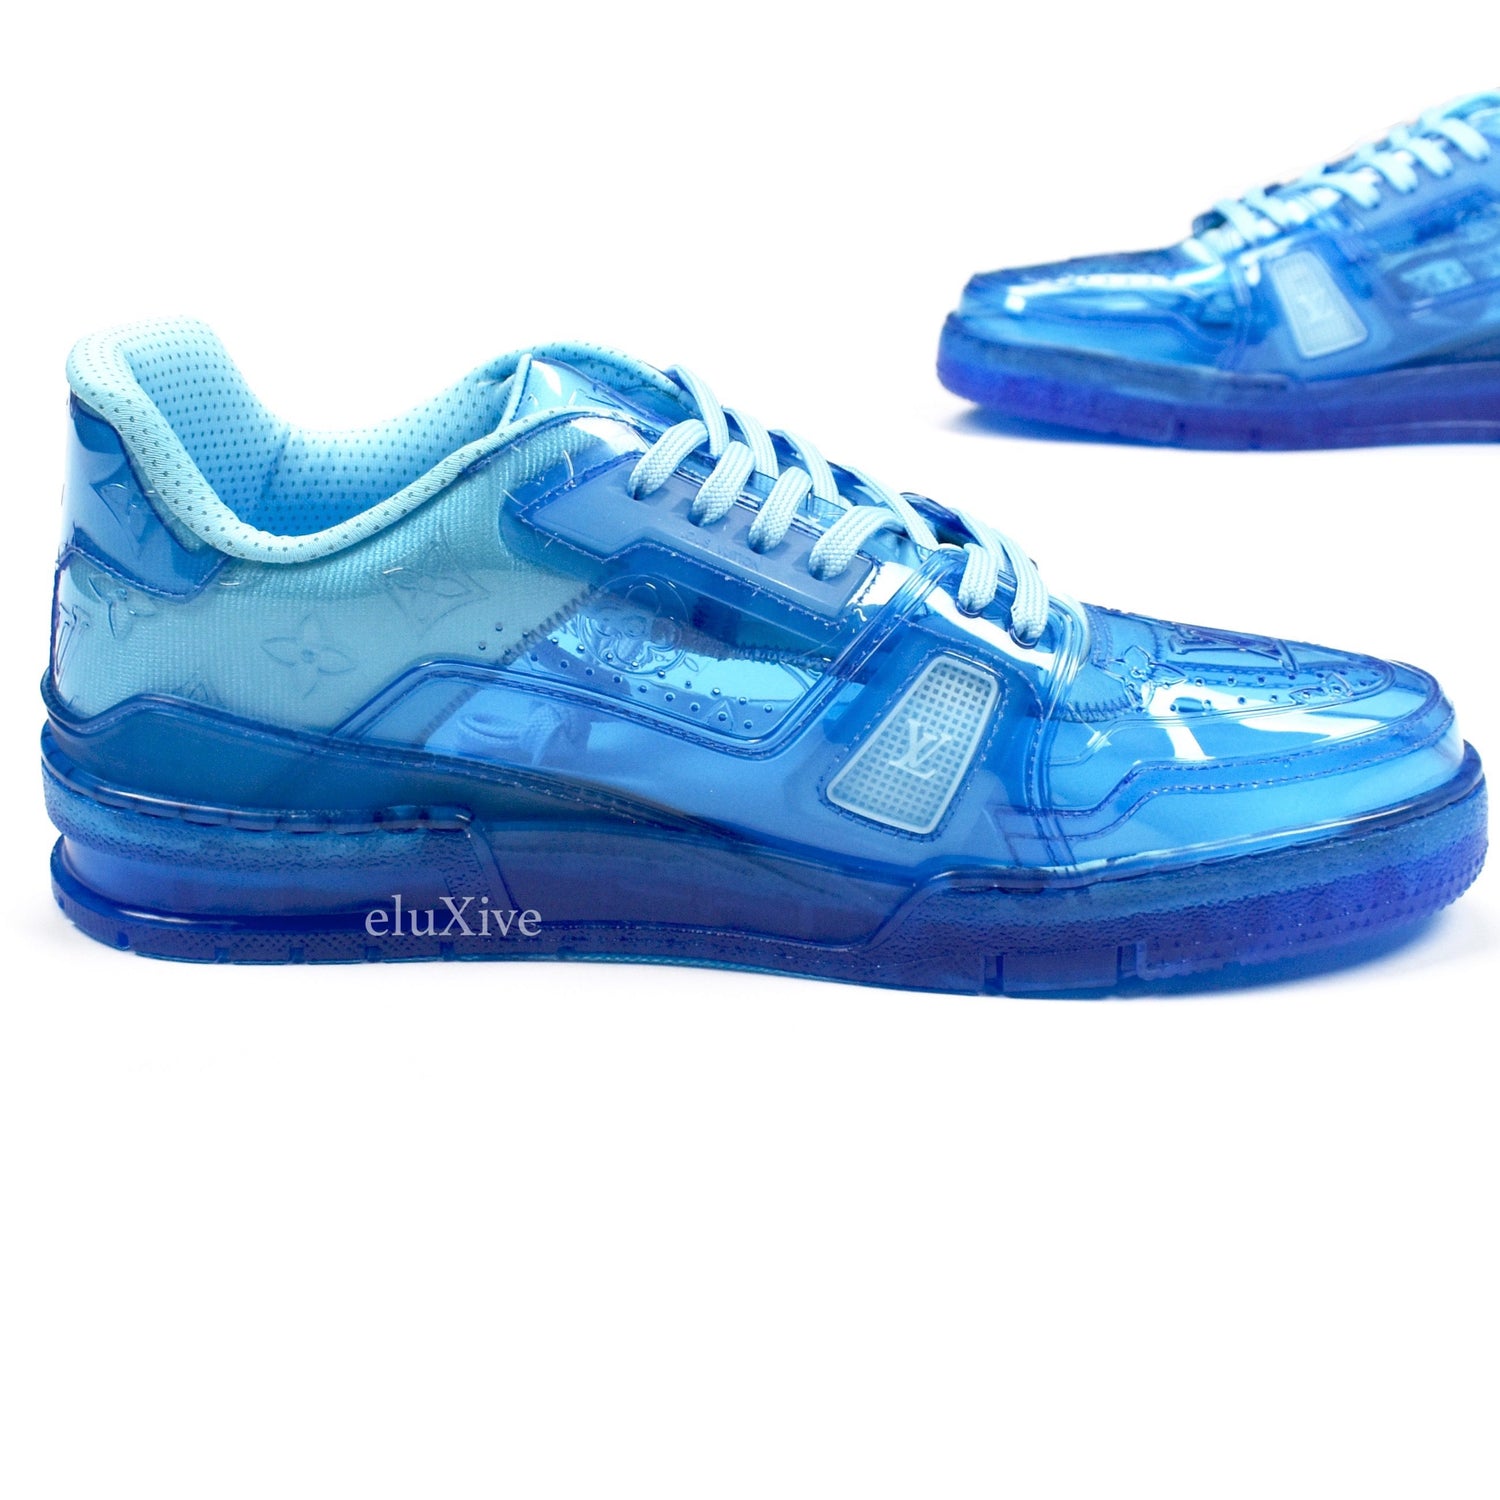 Louis Vuitton Men's Transparent Clear Blue Trainer sneakers Size 7.5  US